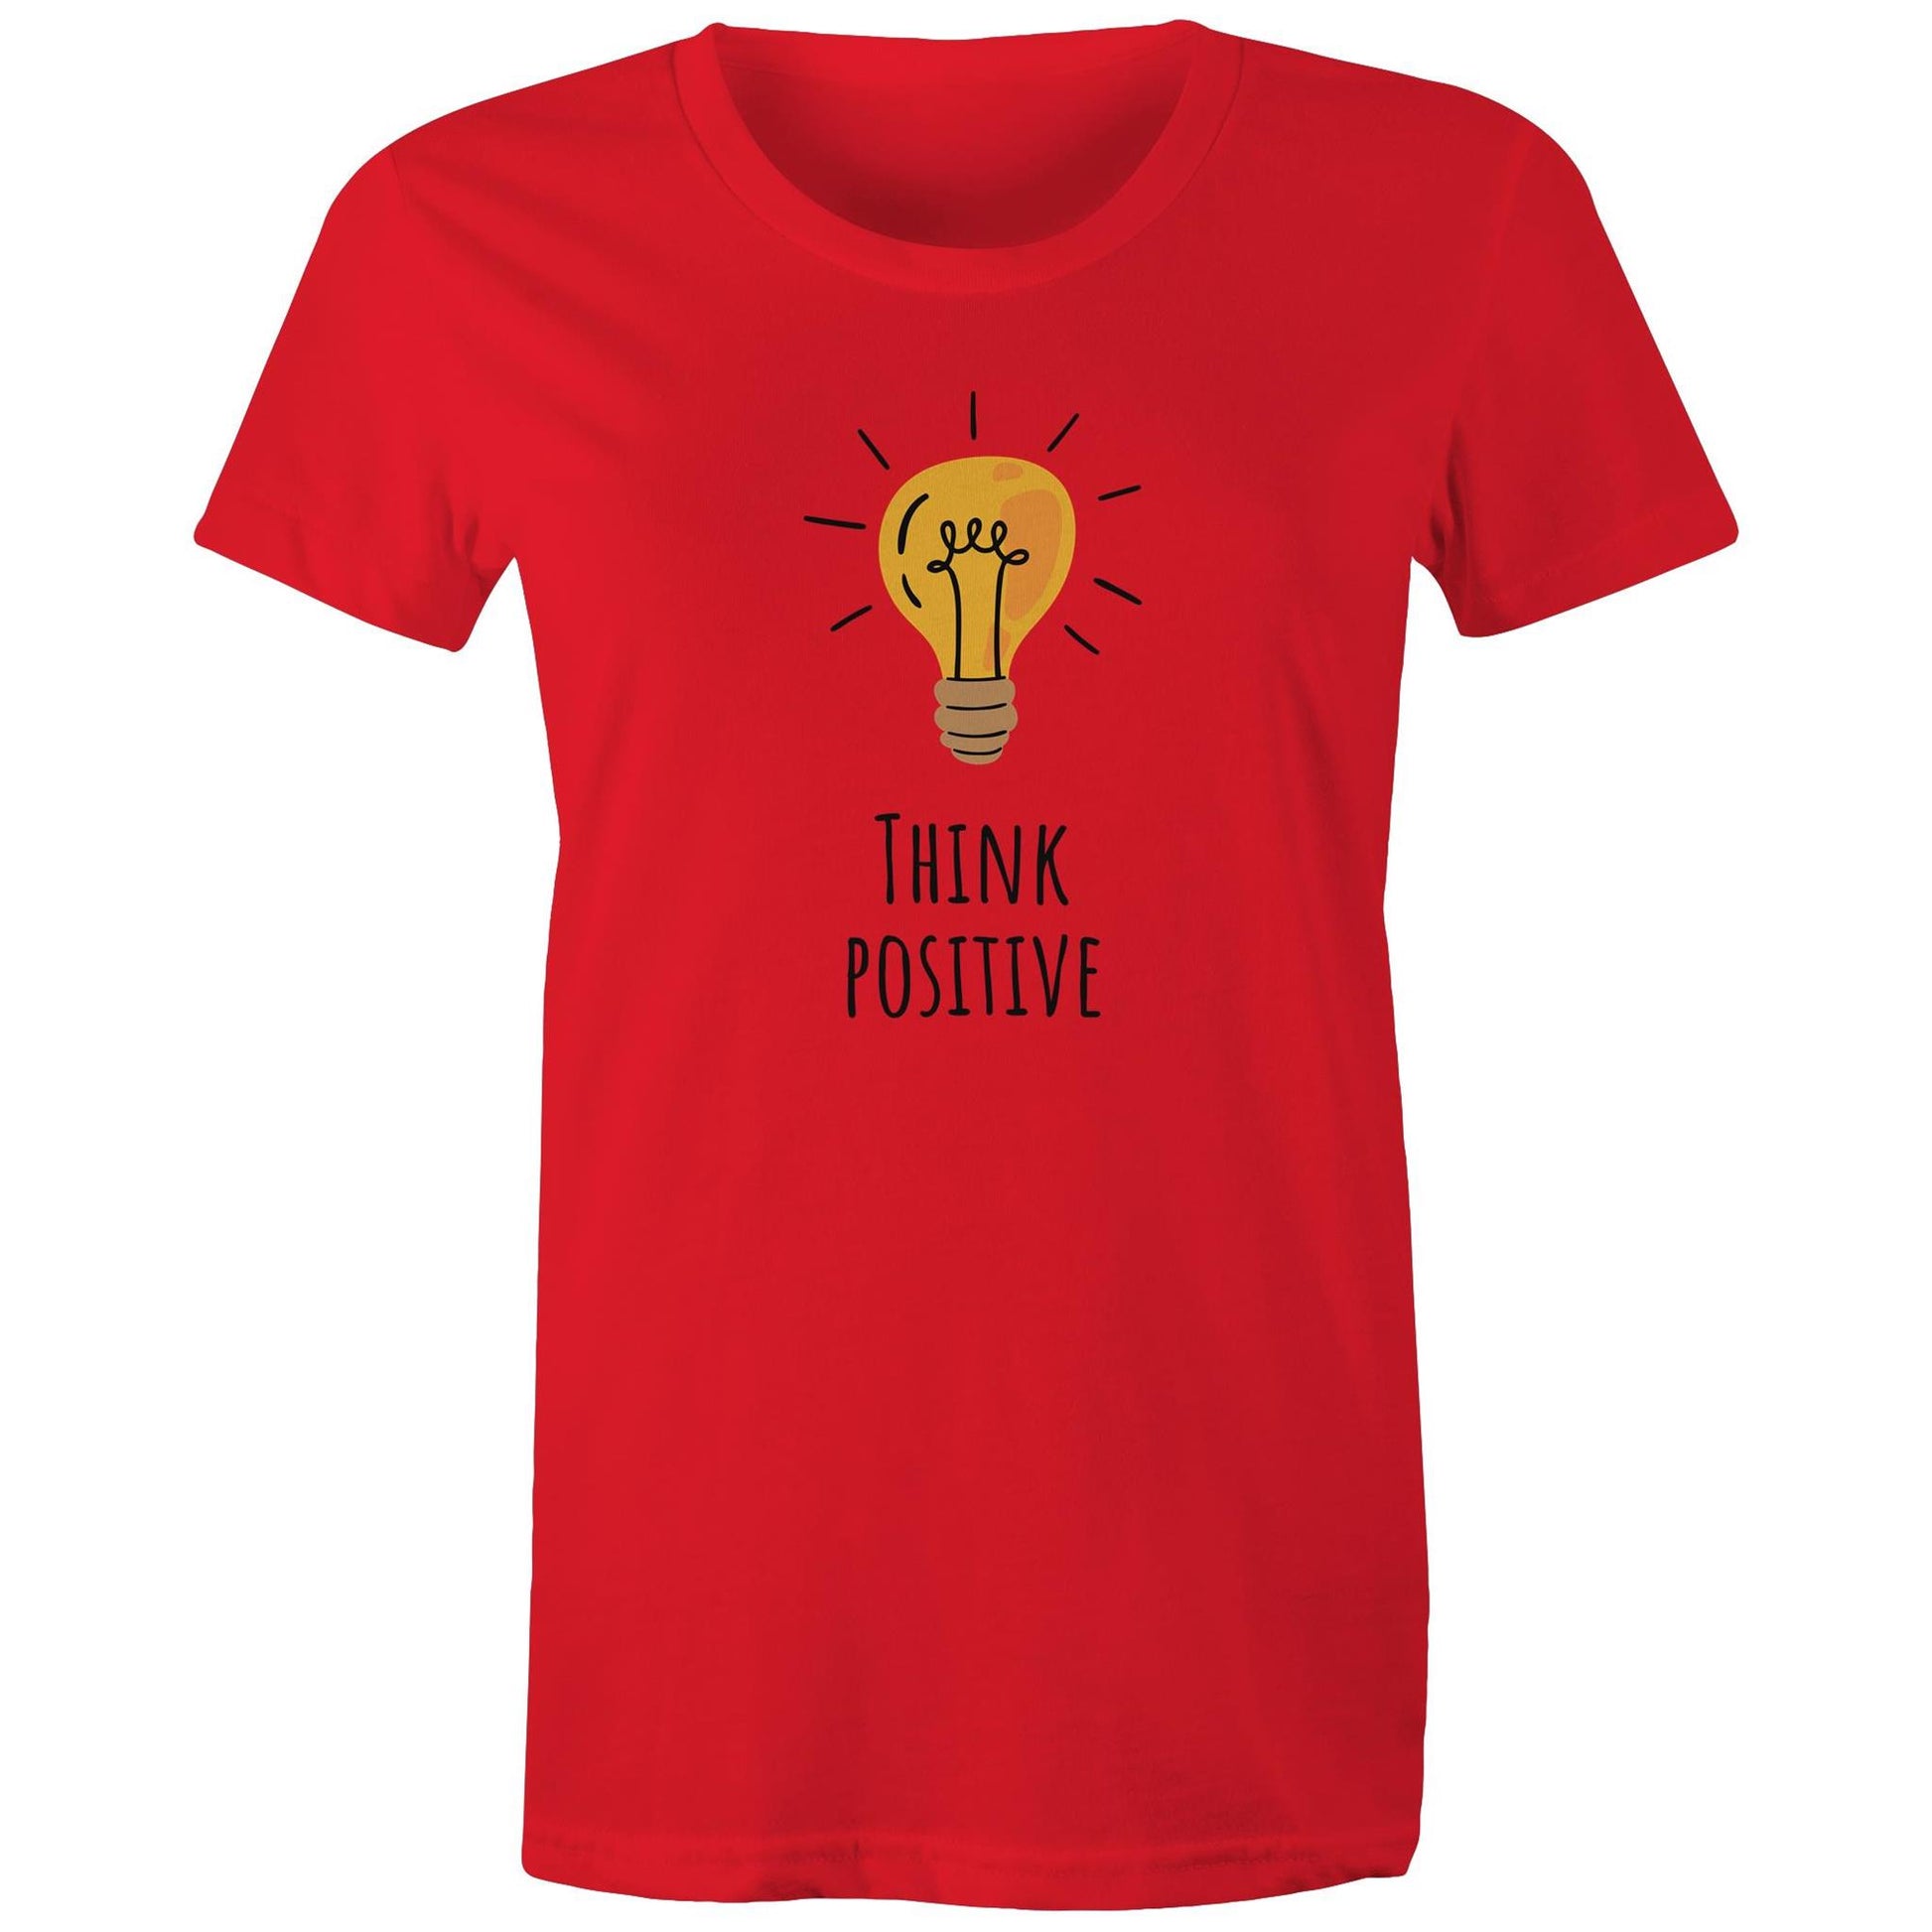 Think Positive - Womens T-shirt Red Womens T-shirt Motivation